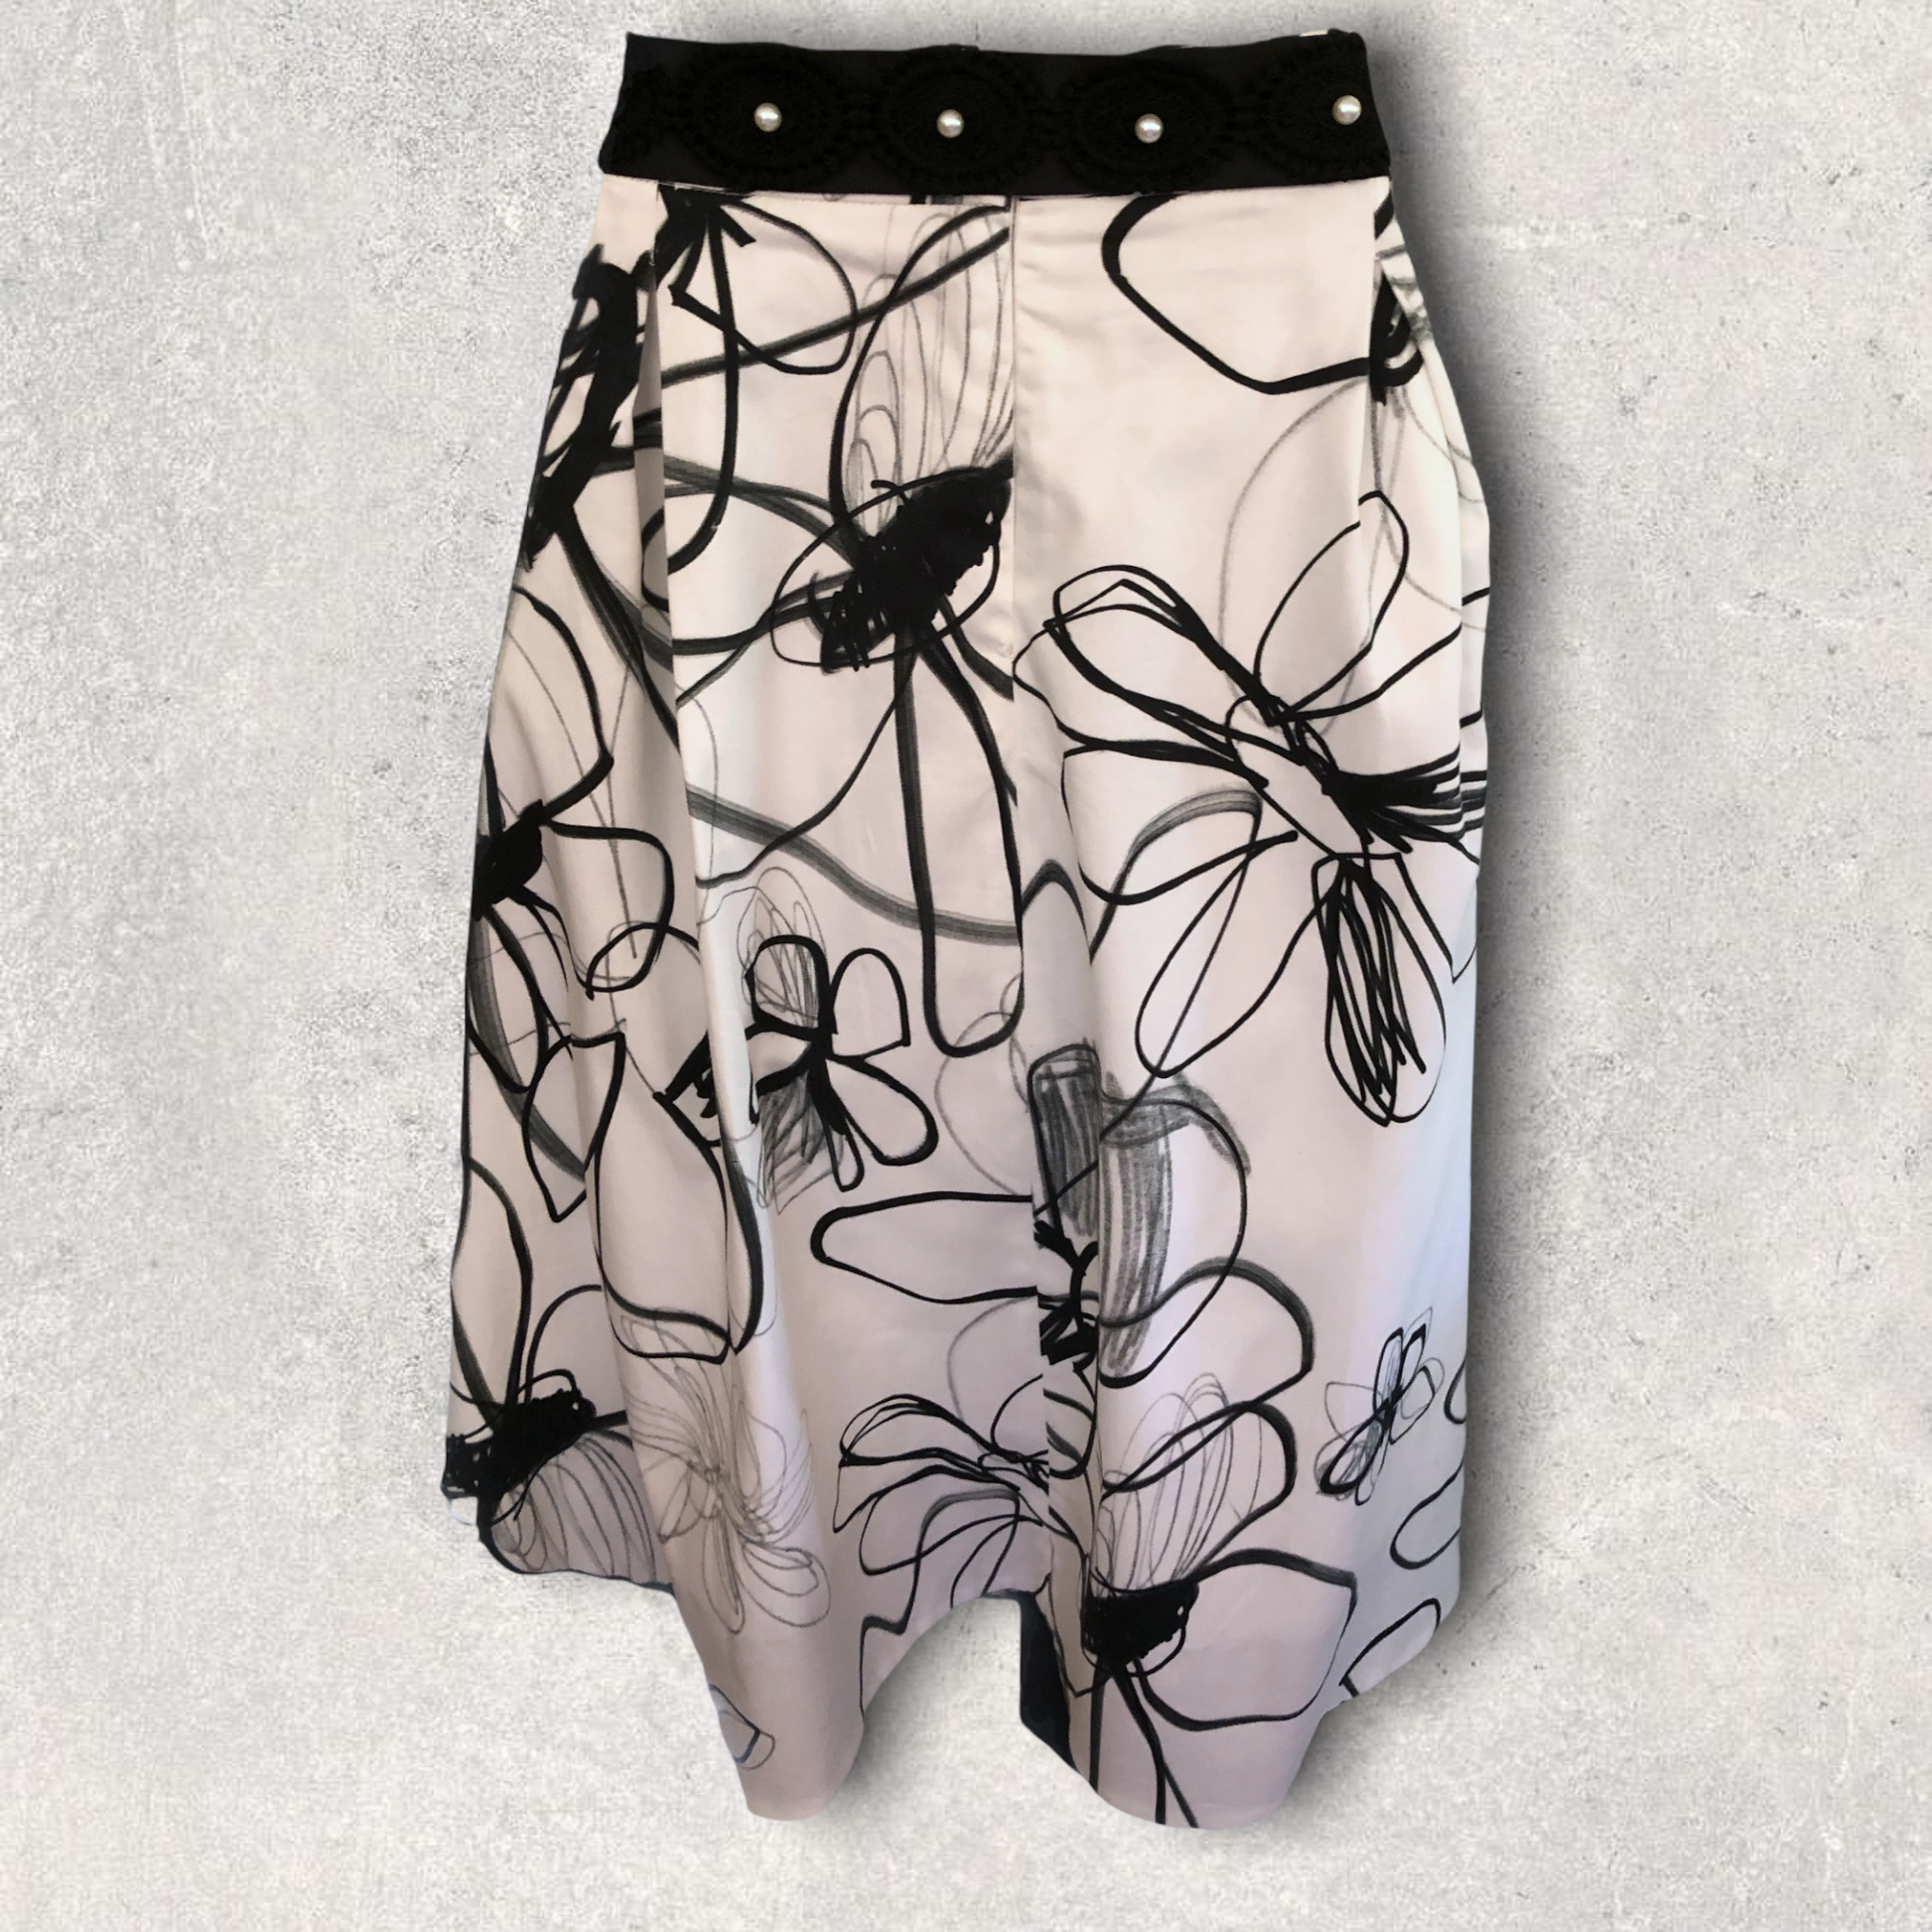 Michaela Louisa Black & White Full Belted Skirt UK 16 US 12 EU 44 BNWT RRP £145 Timeless Fashions